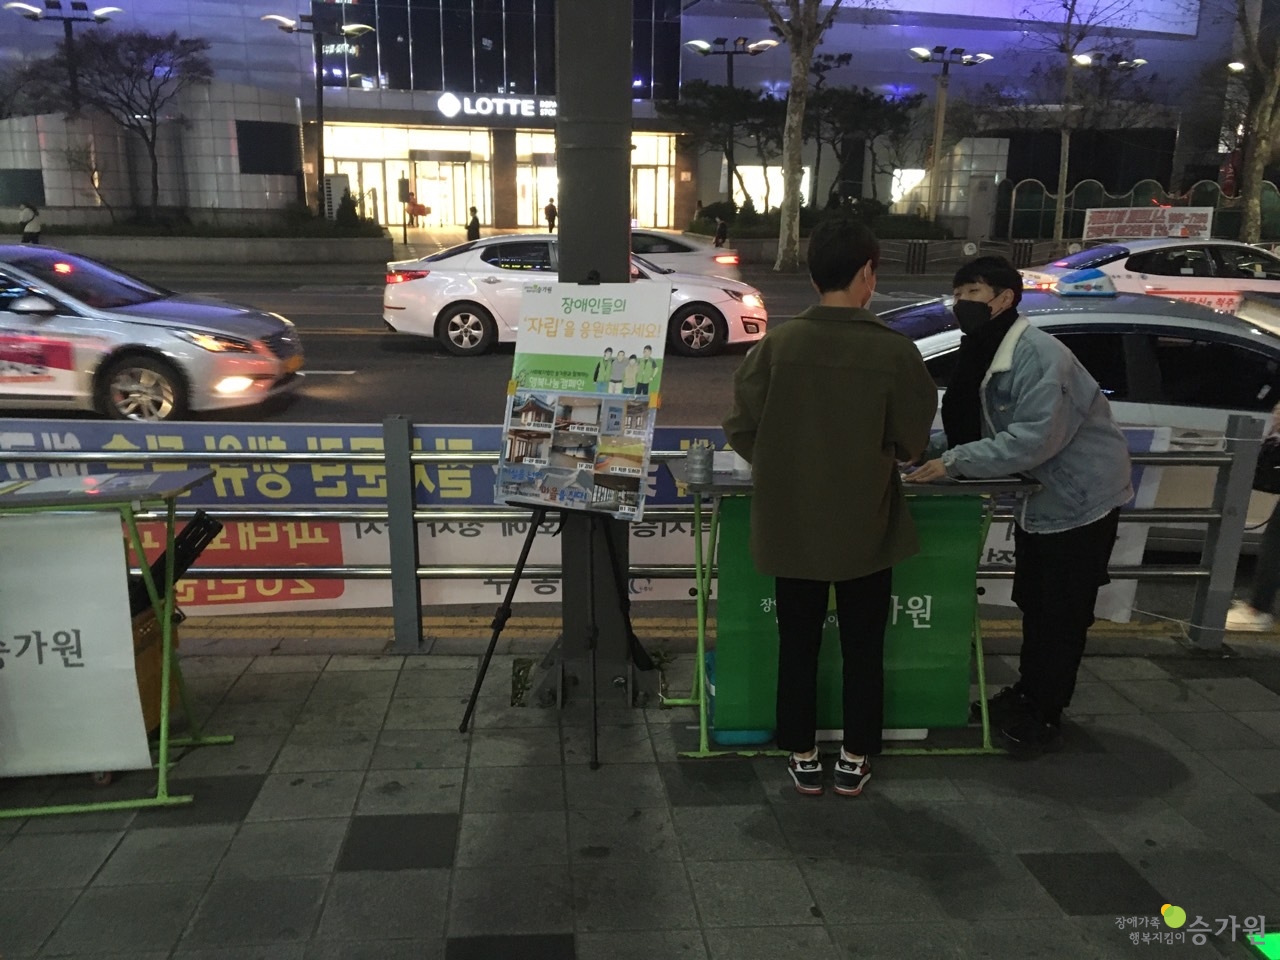 장애가족행복지킴이 승가원 ci 삽입/저녁, 구월역에서 시민 한 분께 캠페인 설명을 드리는 사진